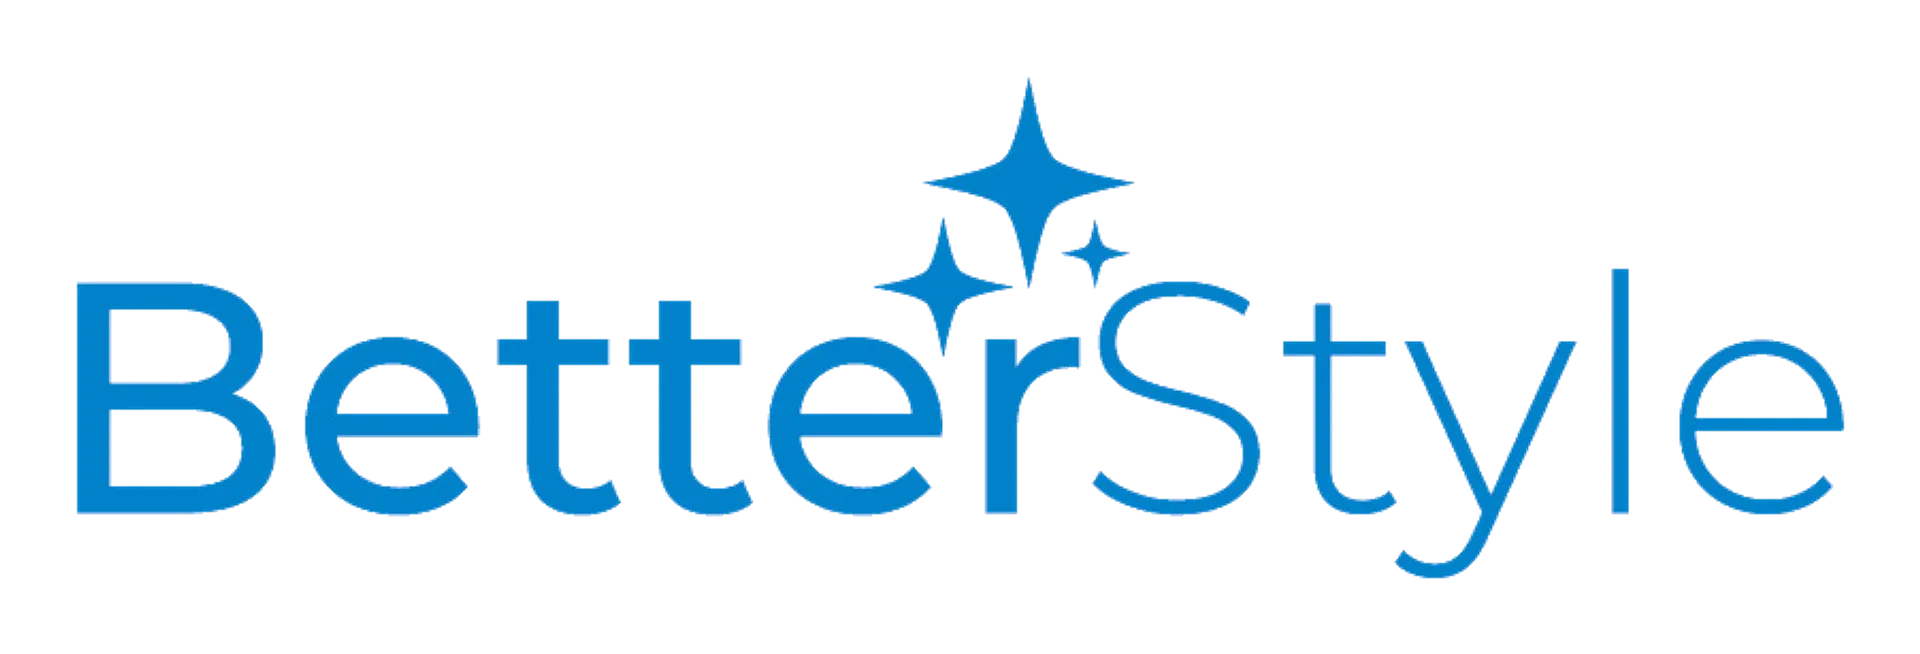 BETTERWARE logo